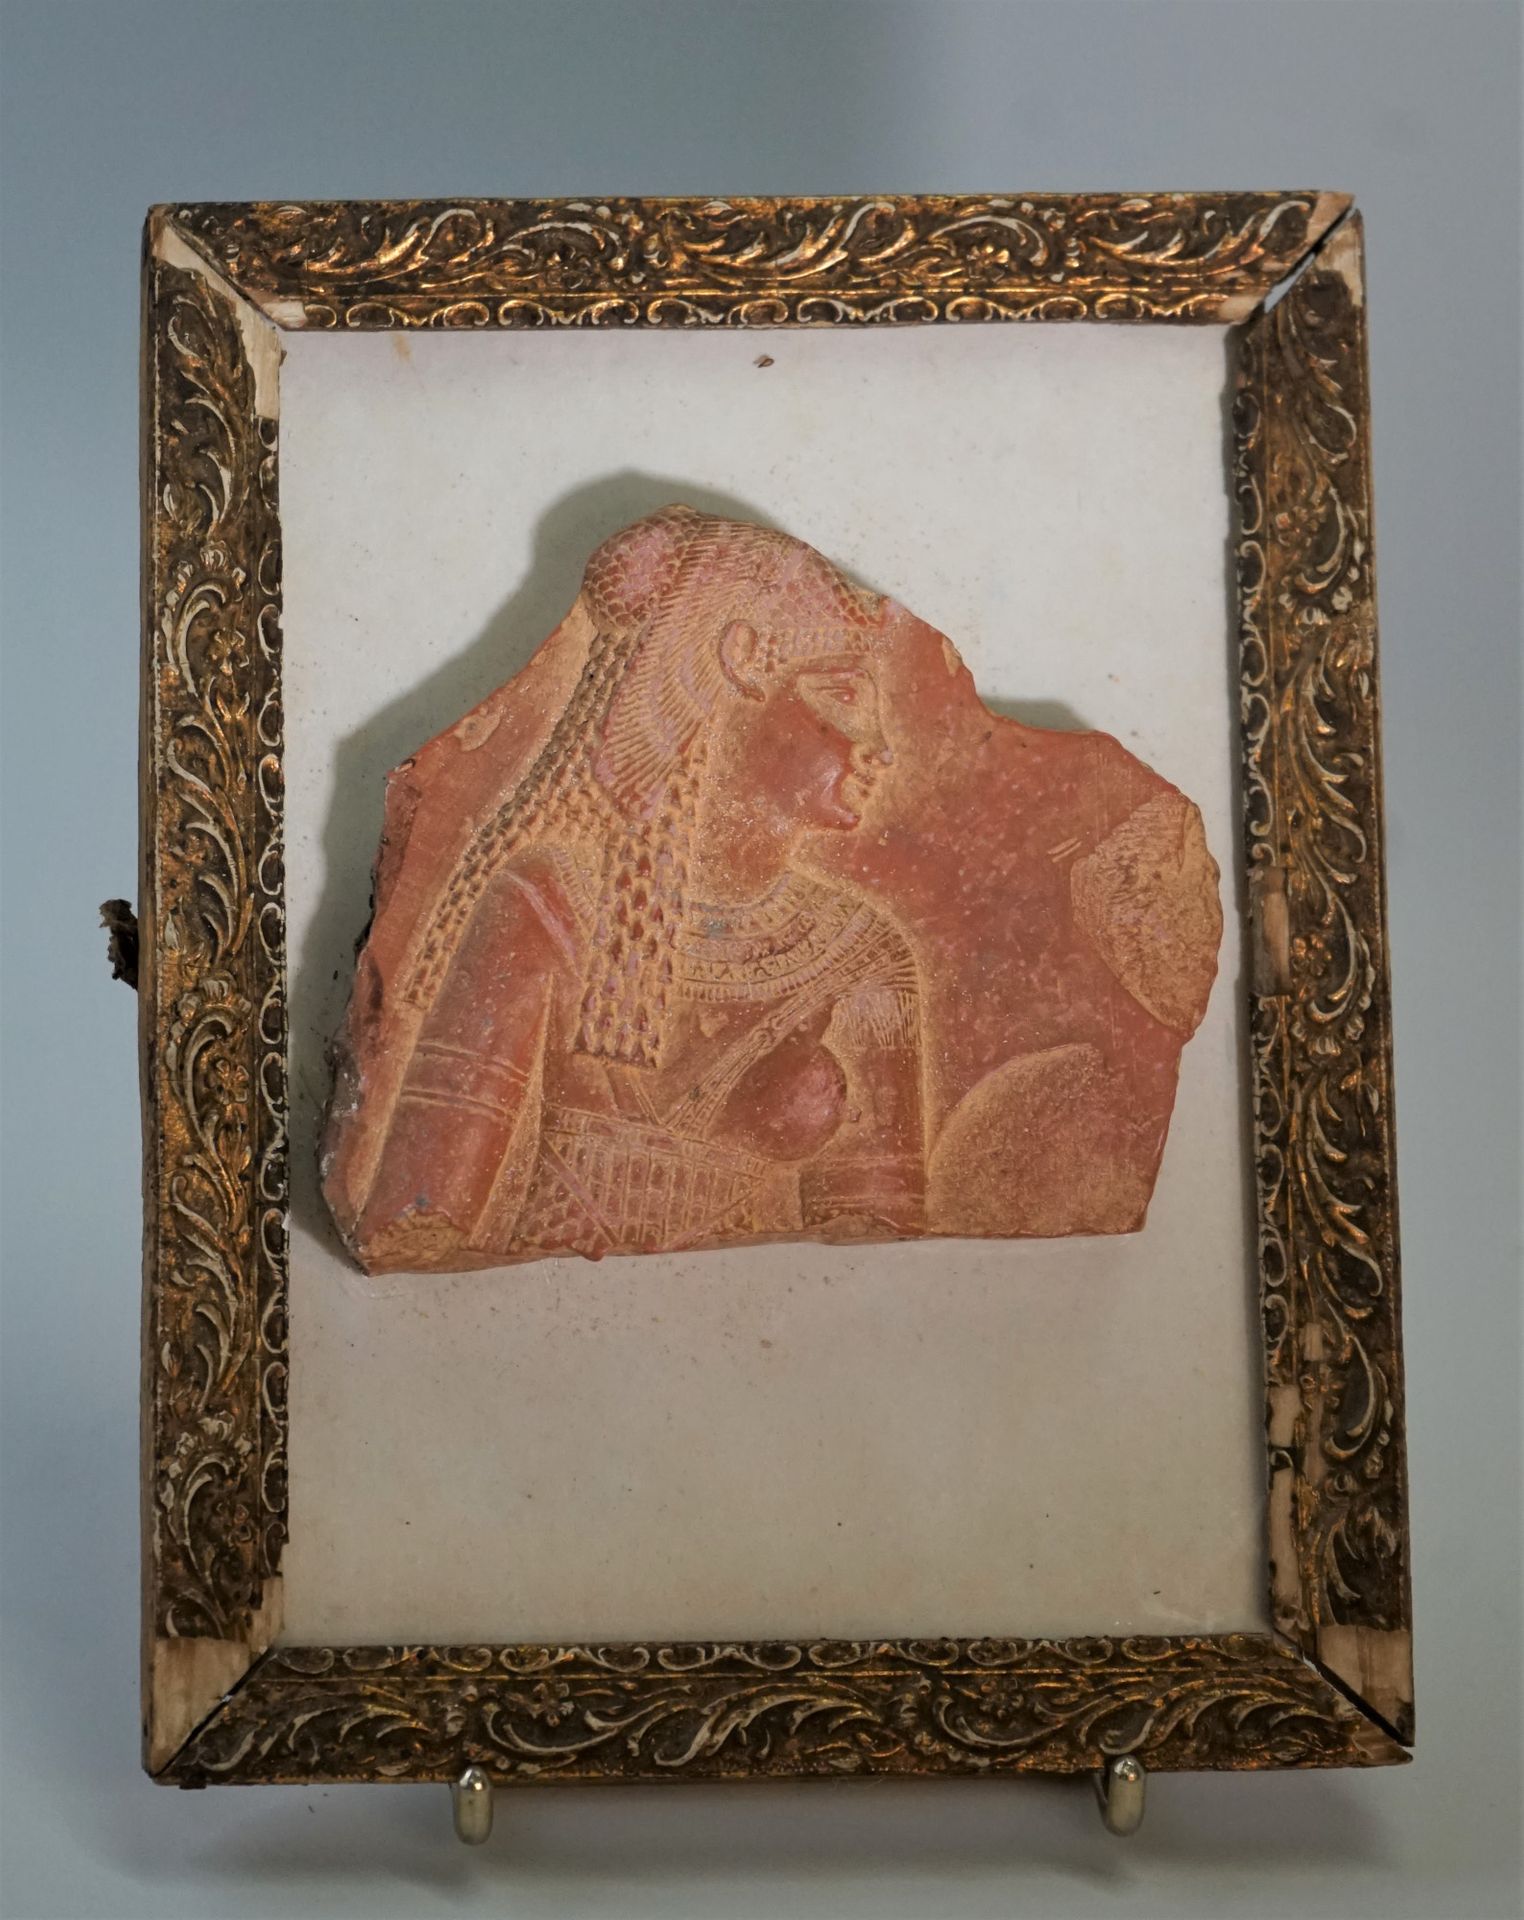 Null 代表托勒密女王的碎片。

古埃及的作品

9x10.7厘米